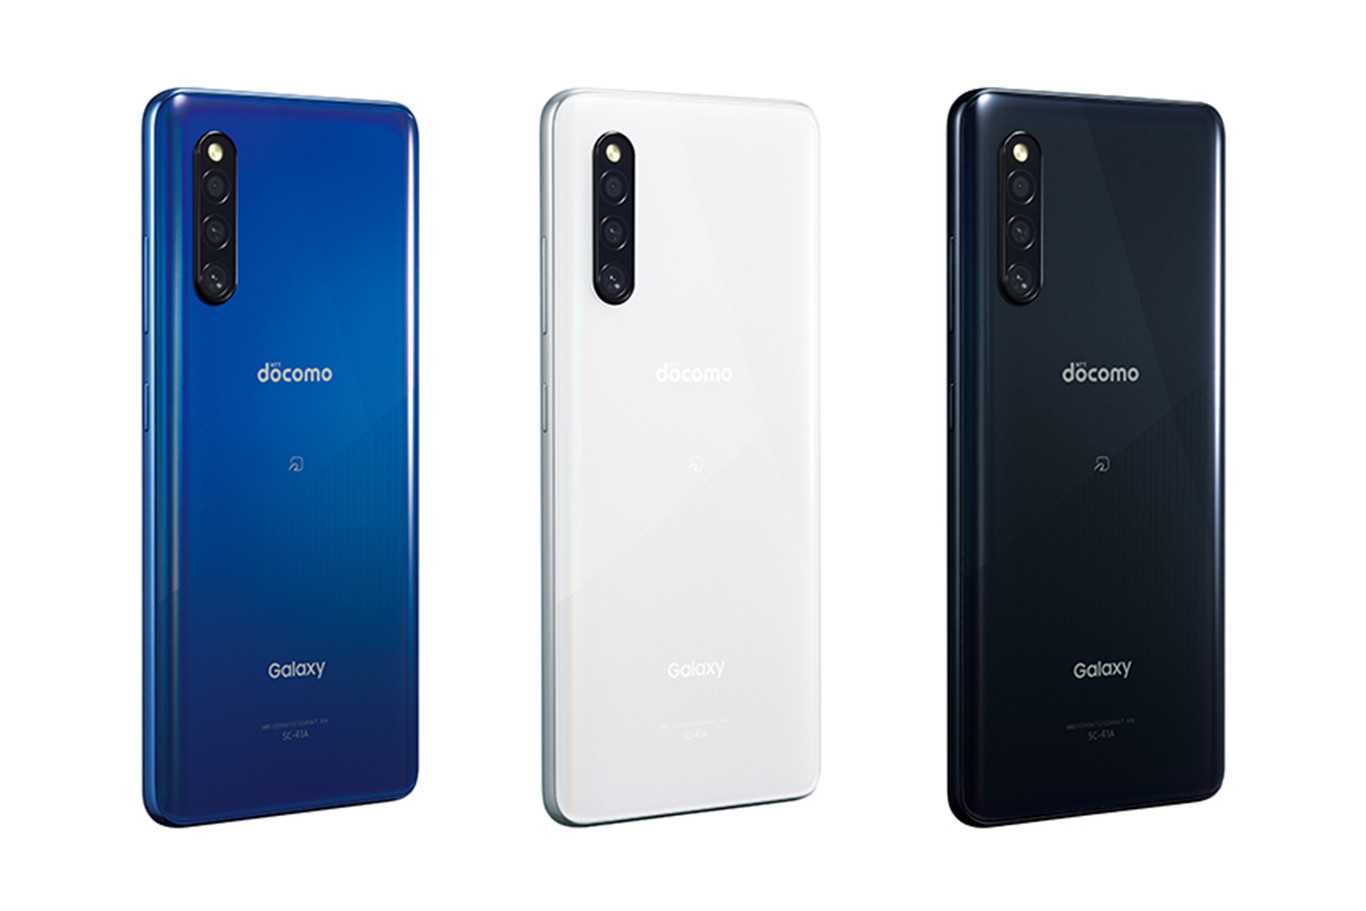 Известный инсайдер OnLeaks вместе с сотрудниками издания Pricebaba представили новые рендеры смартфона A41 который станет приемником нашумевшей модели – Galaxy A40 К